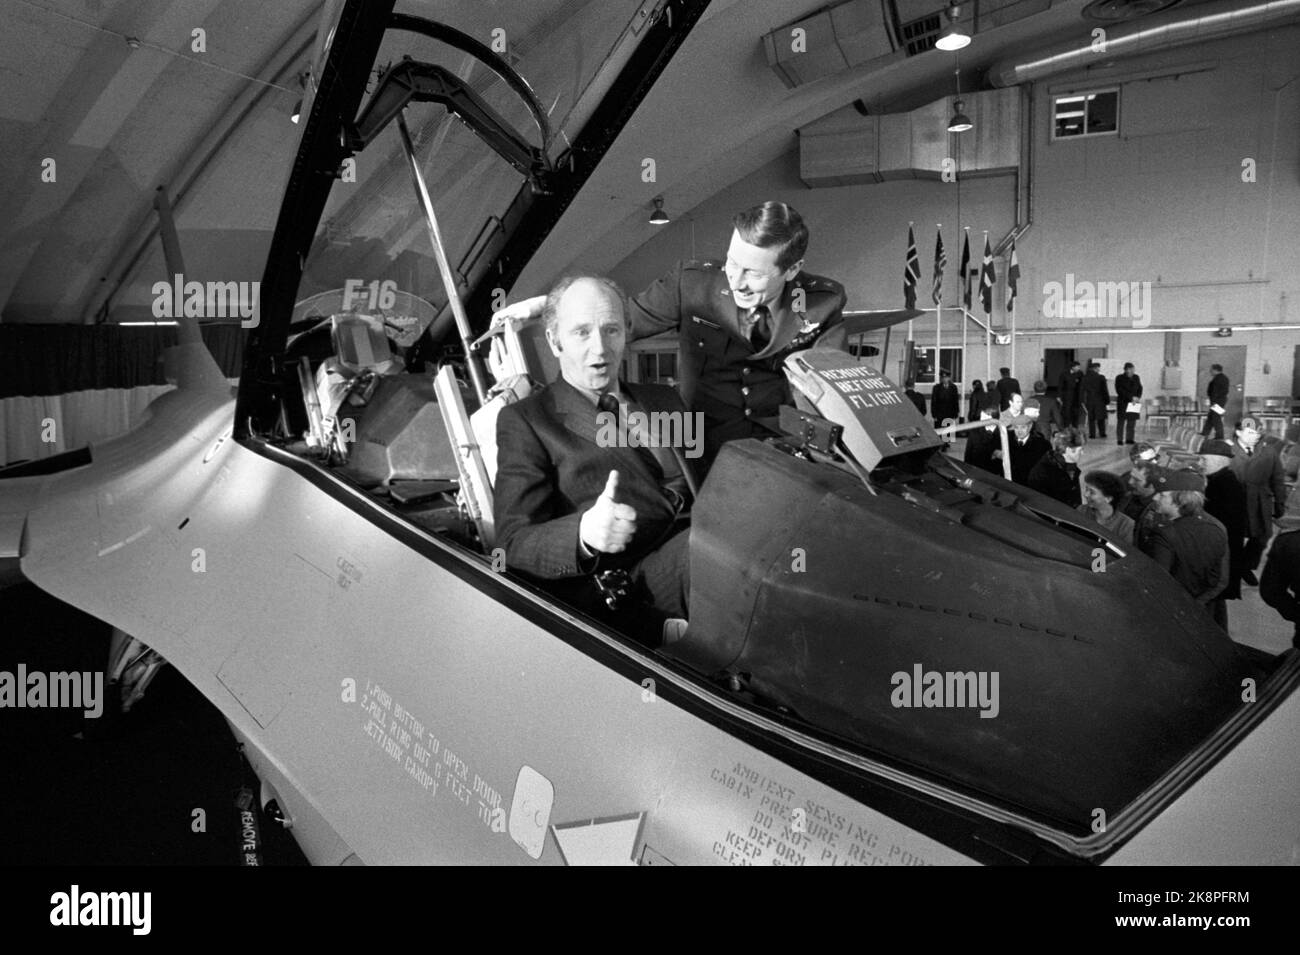 Rygge 19800125. Échantillon du ministre de la Défense, Thorvald Stoltenberg (AP), dans le poste de pilotage du premier F-16 livré officiellement en Norvège. Stoltenberg reçoit des instructions du juge d'appel général principal Abrahamson de l'armée de l'air américaine. Photo : Erik Thorberg NTB Banque D'Images